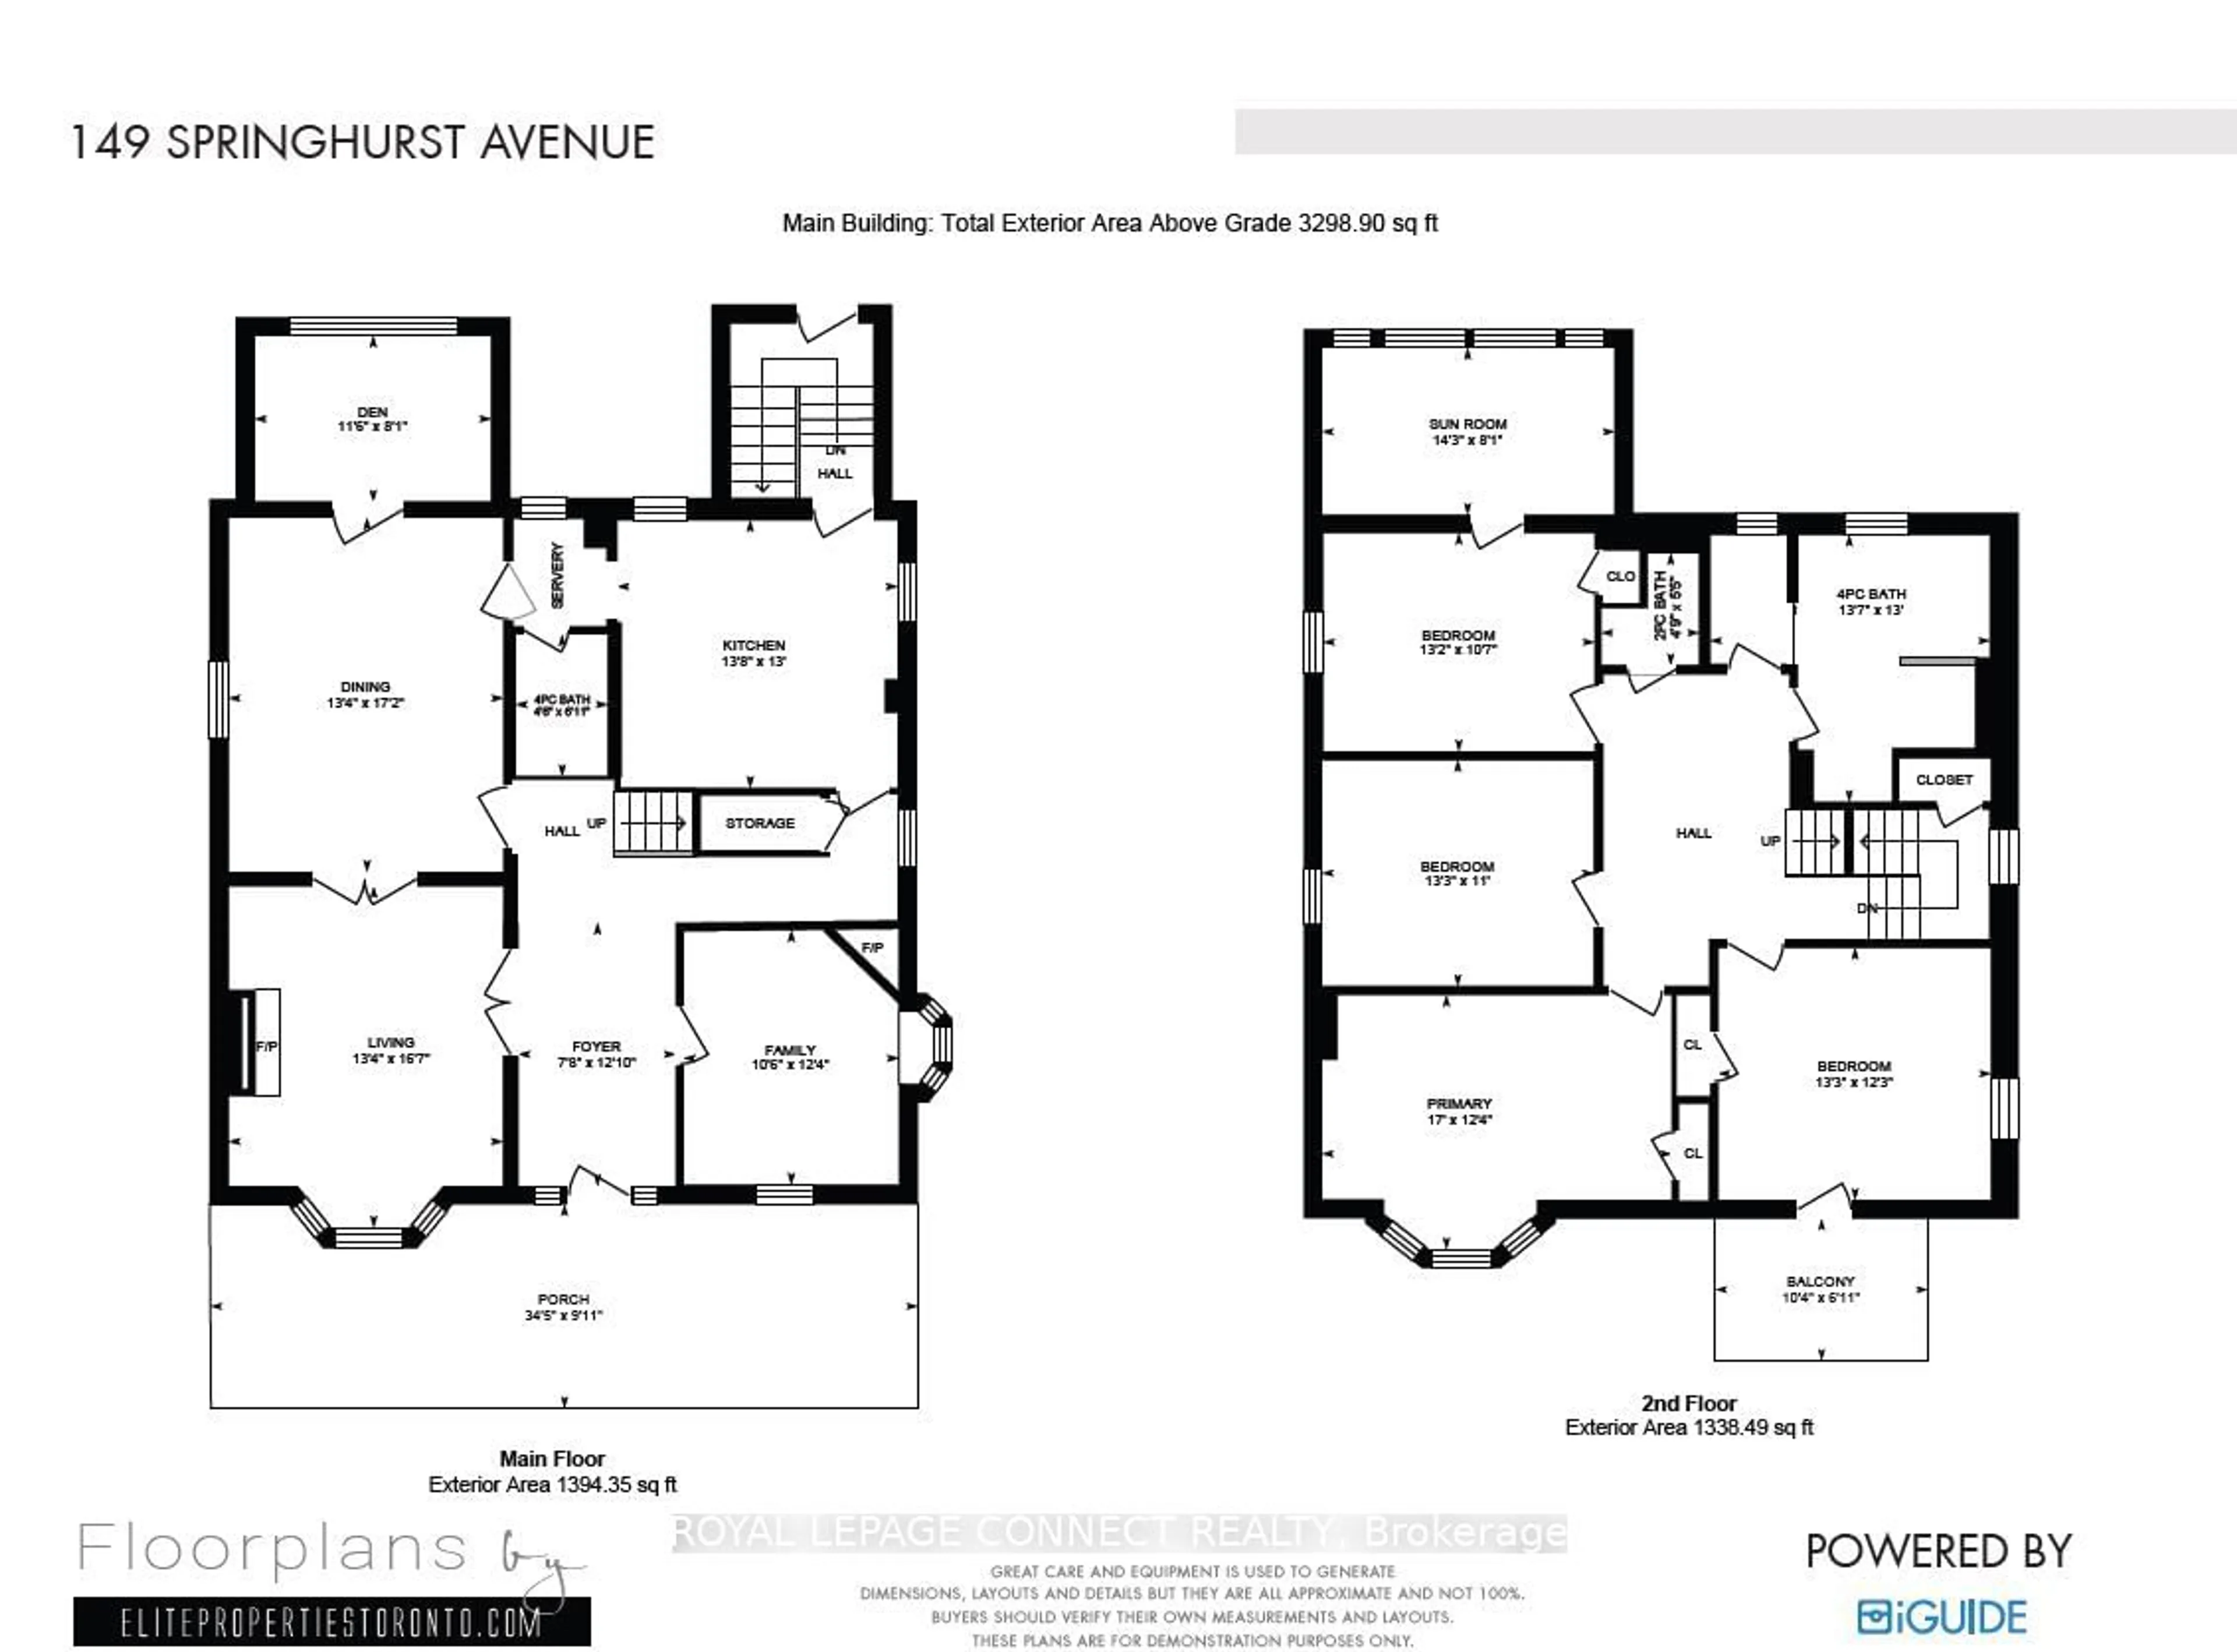 Floor plan for 149 Springhurst Ave, Toronto Ontario M6K 1B9